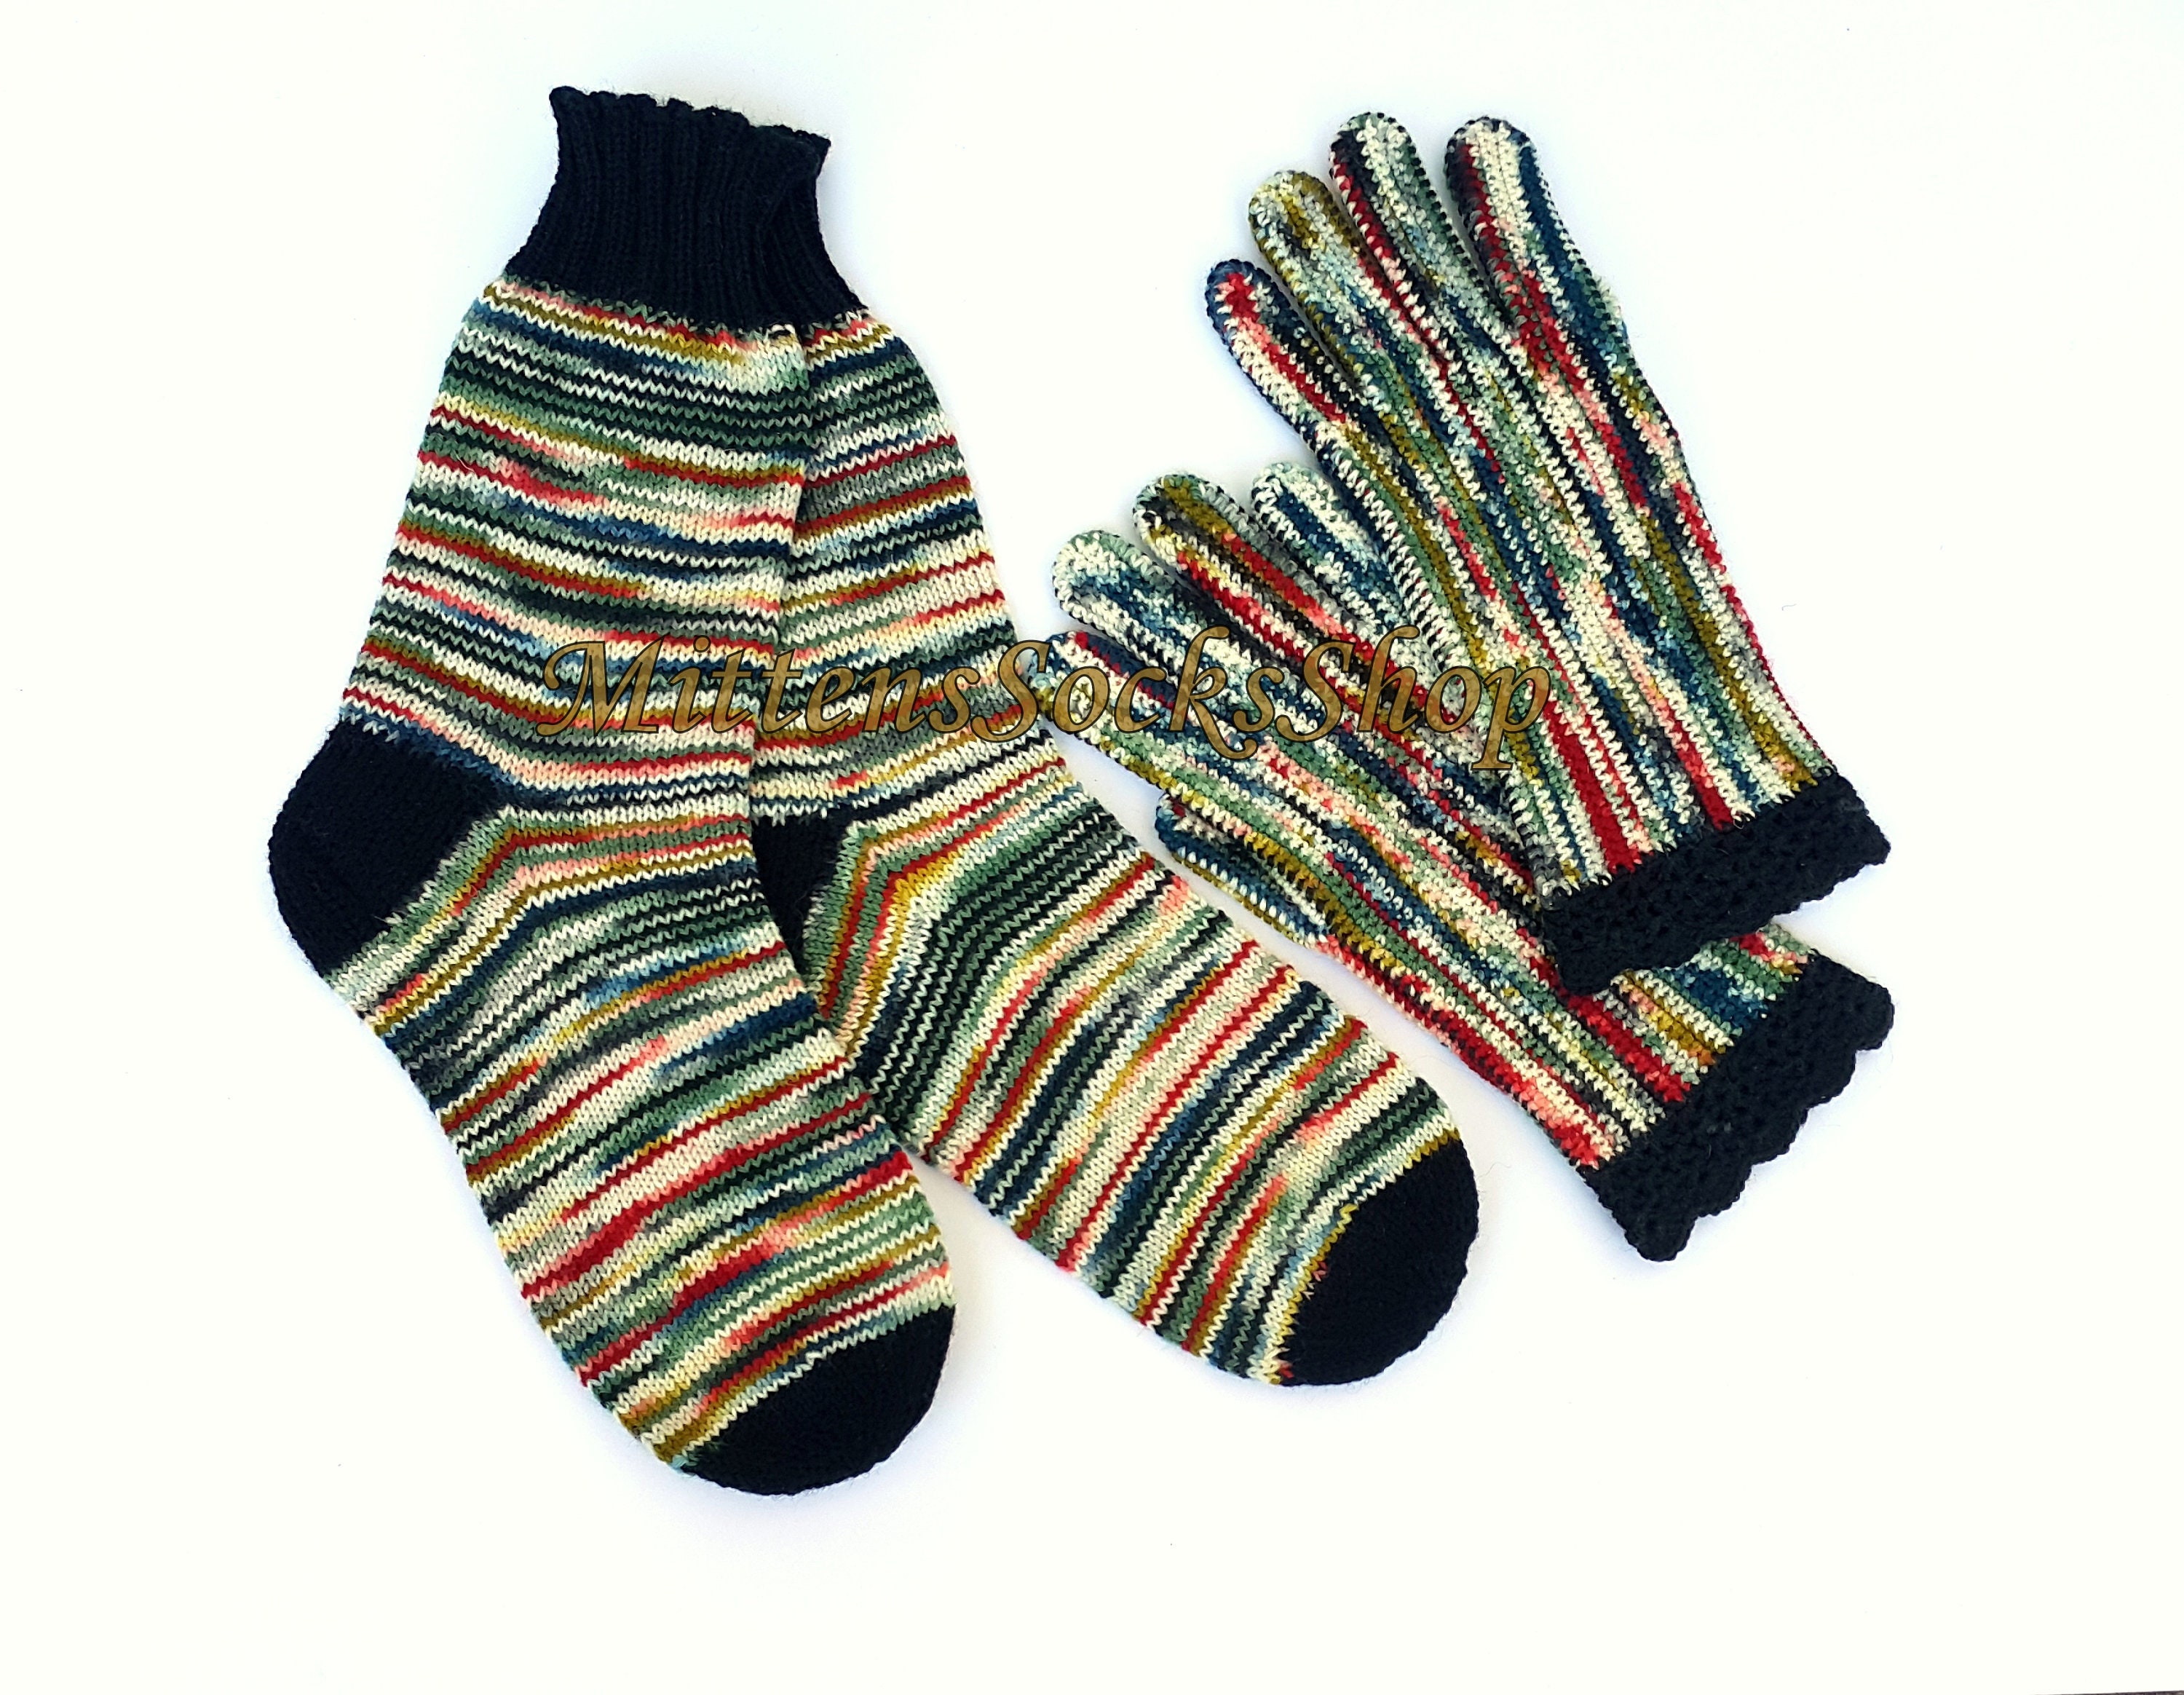 Multicolor Hand Knit Socks From Sock Yarn White Green Black Women's Girl's Men's Striped